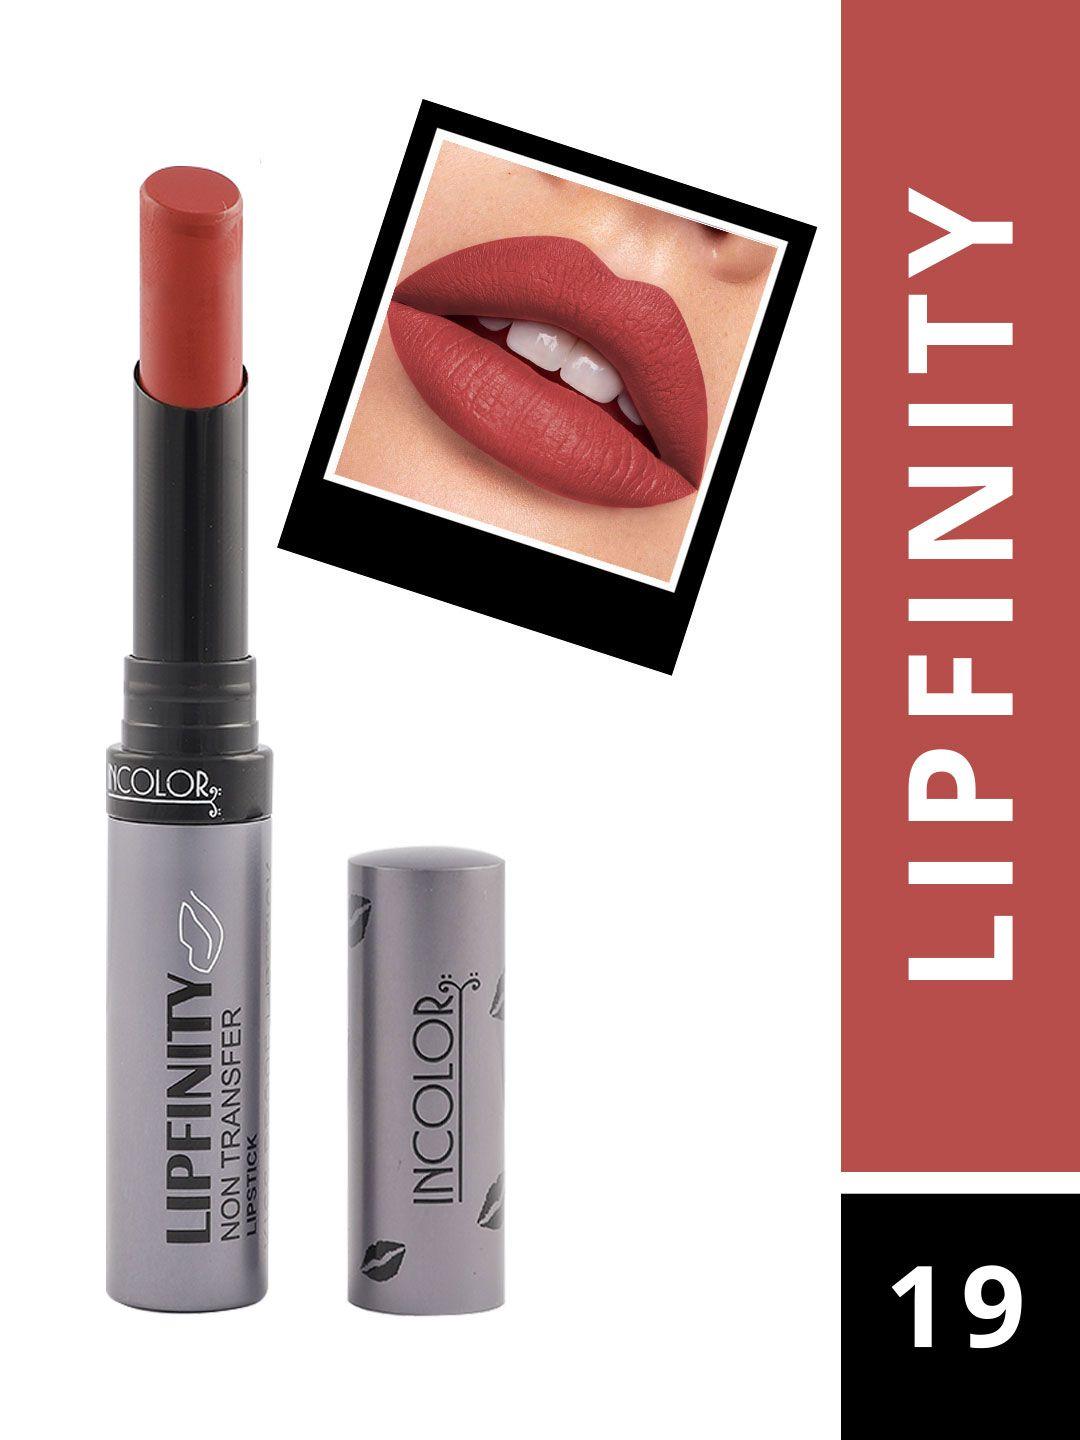 incolor lipfinity non-transfer lipstick - 19